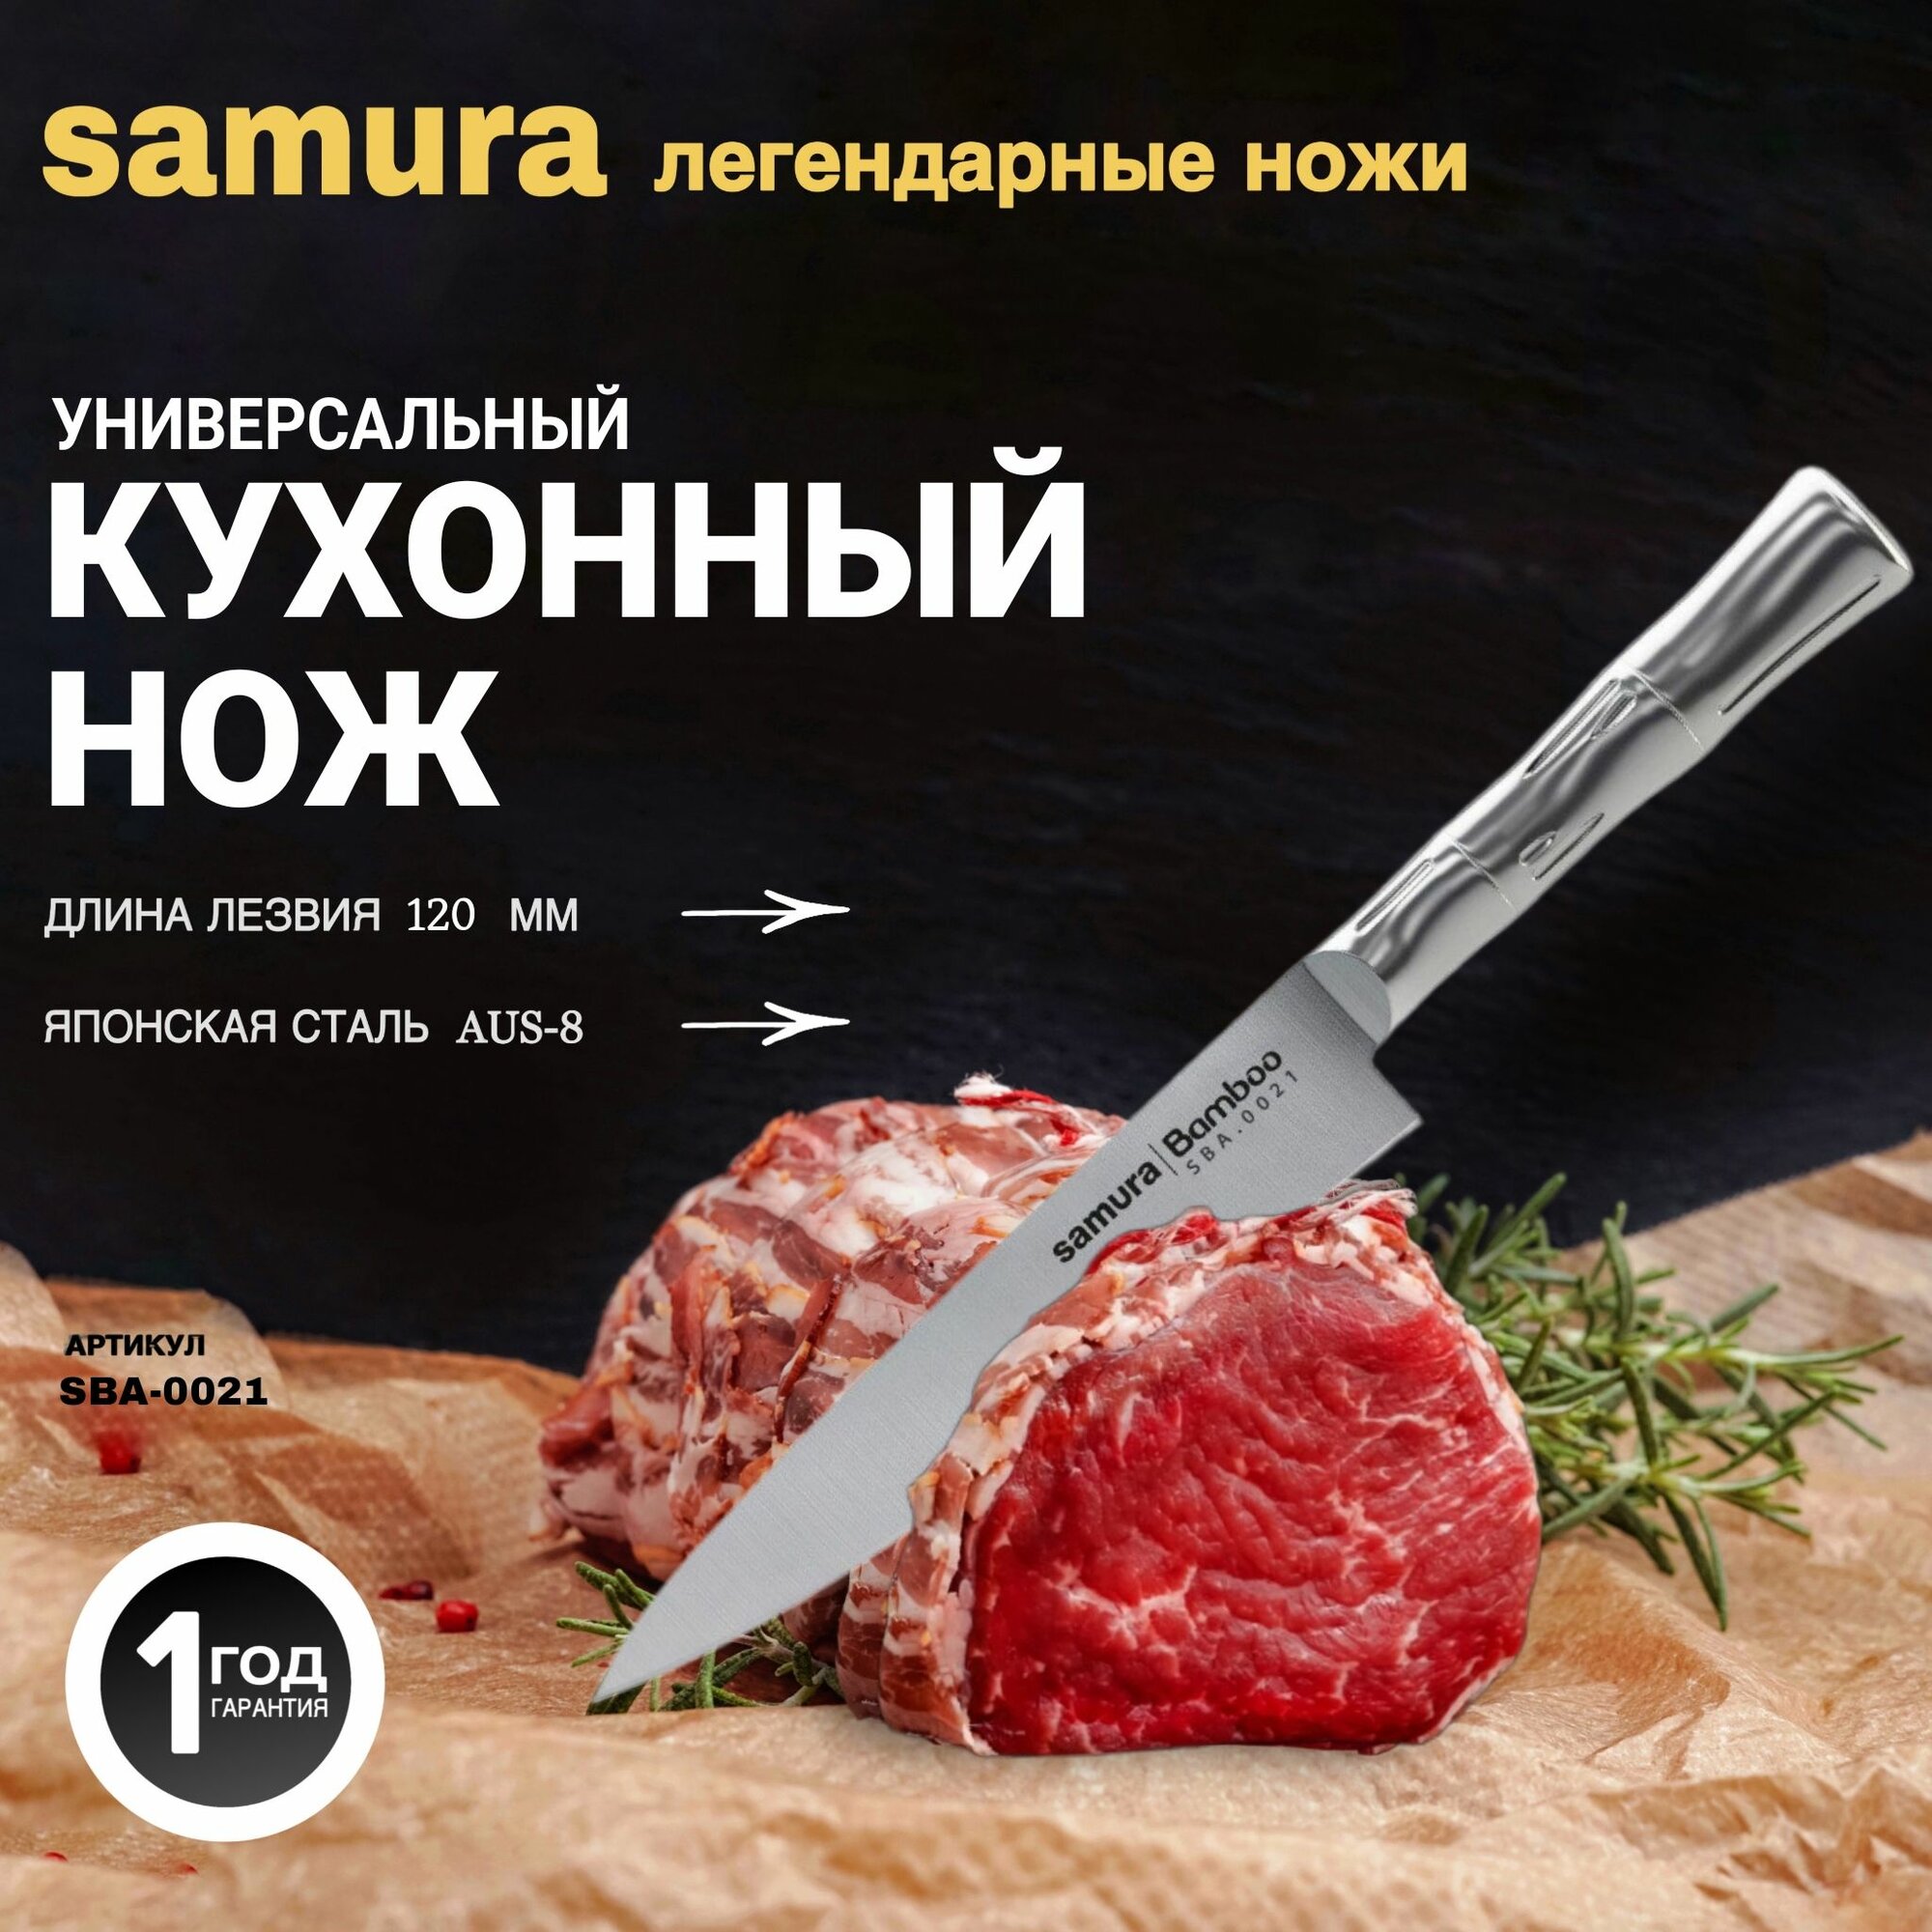 Нож кухонный "Samura Bamboo" универсальный 125мм, AUS-8. SBA-0021